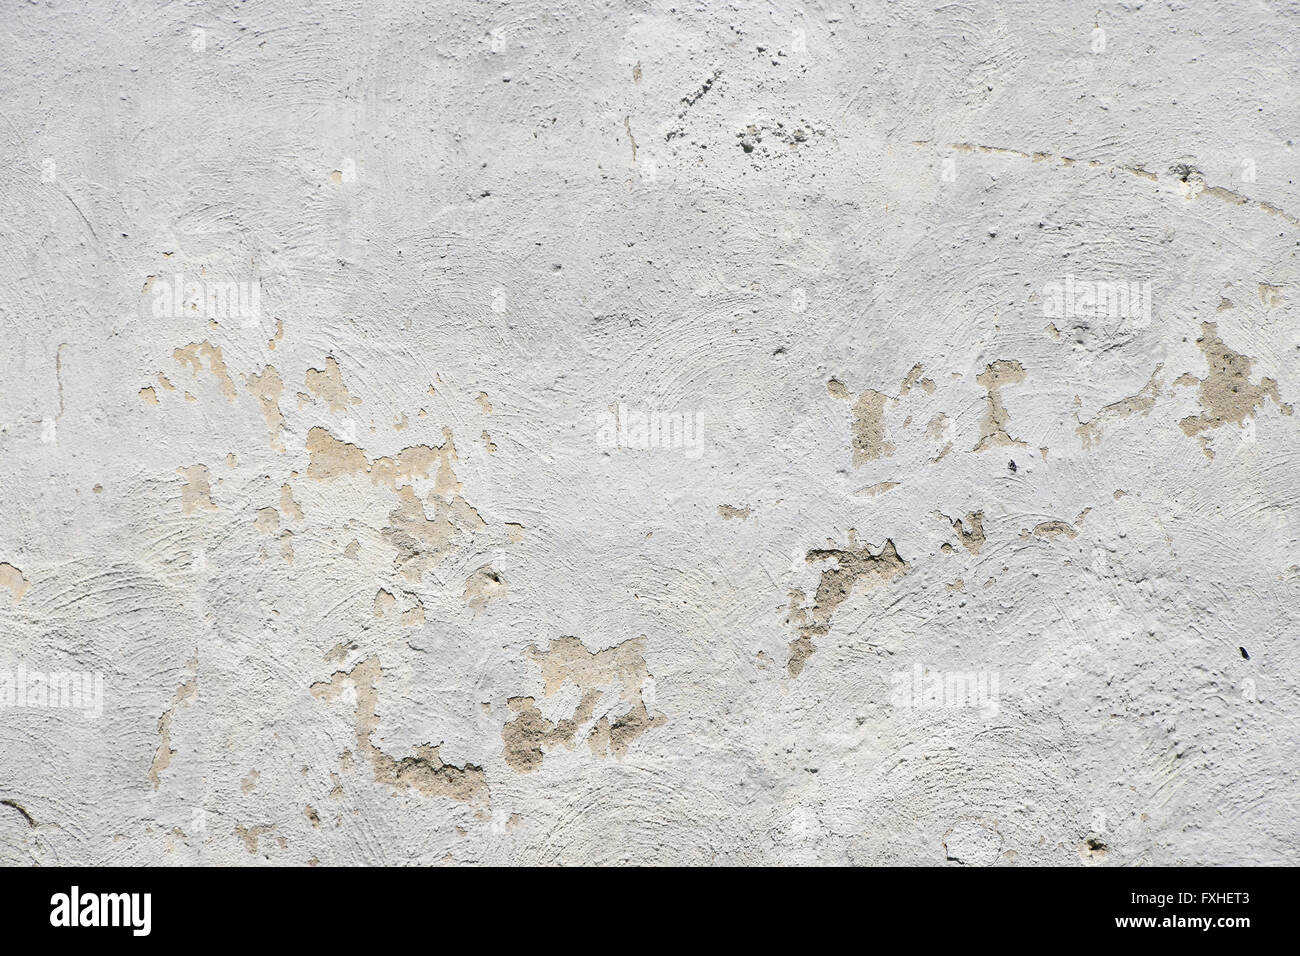 Weiß lackiertes alte schmutzige Beton Putz Wand Textur Hintergrund mit Pinsel Farbspuren, Defekte und Flecken Stockfoto